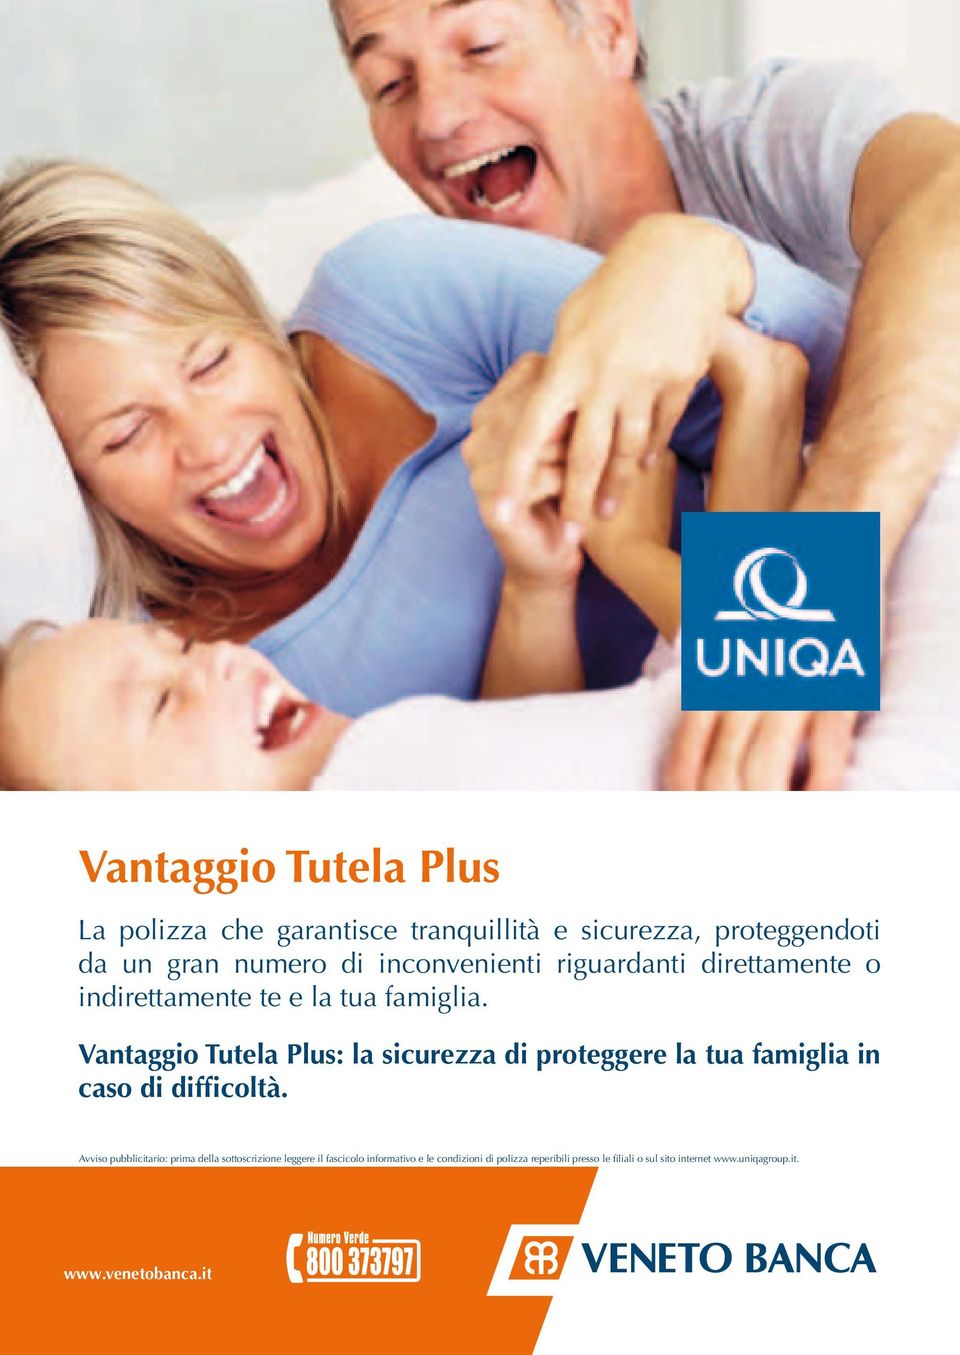 Vantaggio Tutela Plus: la sicurezza di proteggere la tua famiglia in caso di difficoltà.